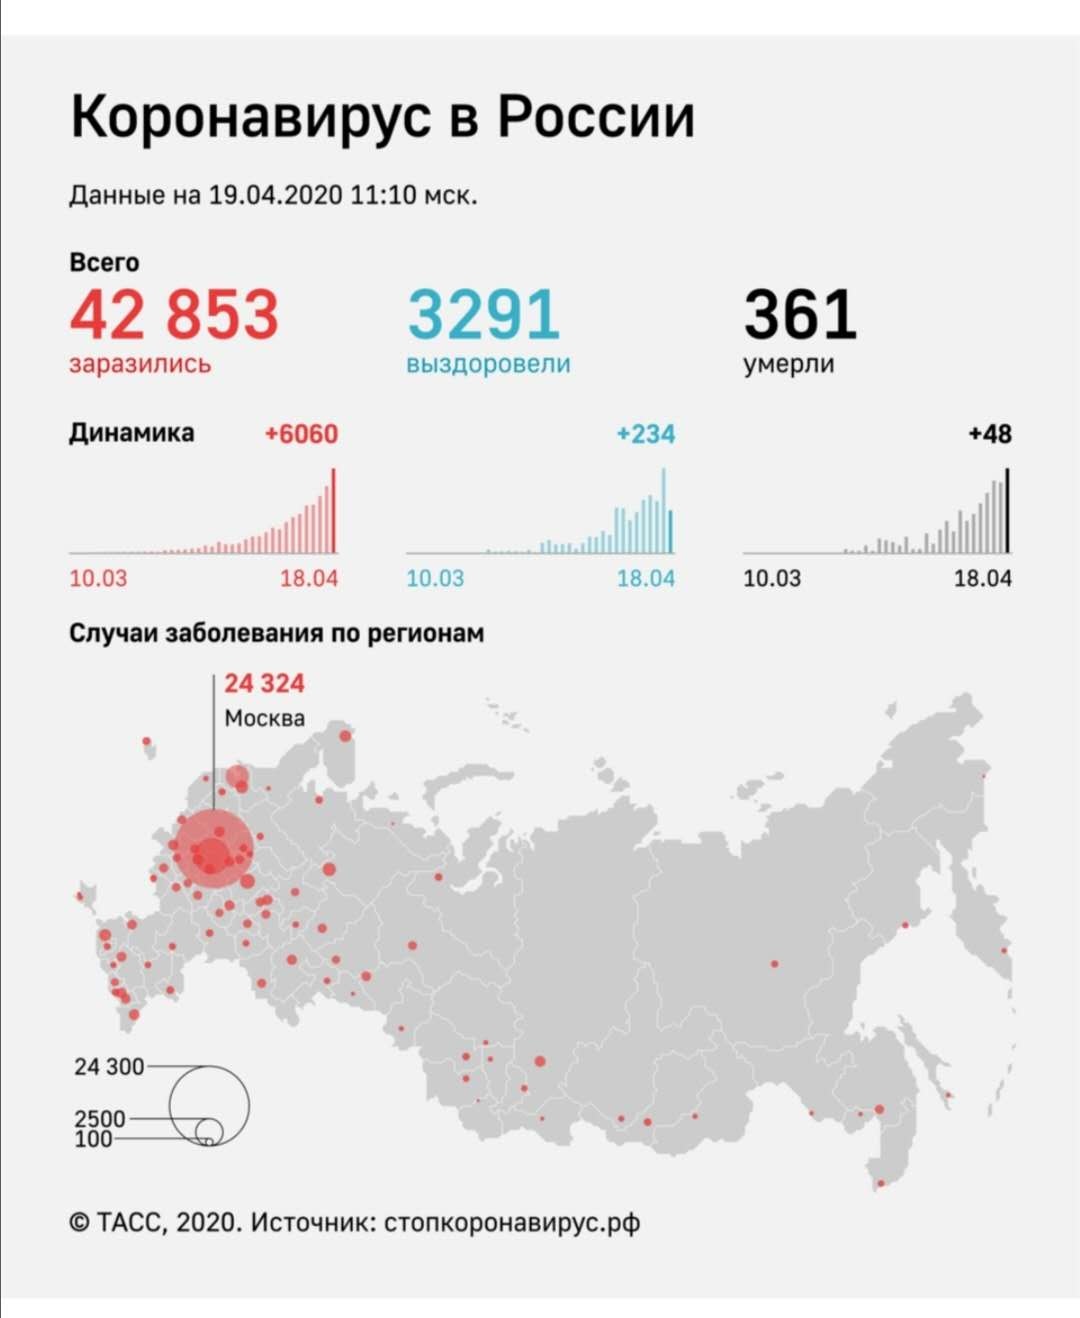 俄罗斯新增新冠肺炎确诊病例6060例 累计42853例